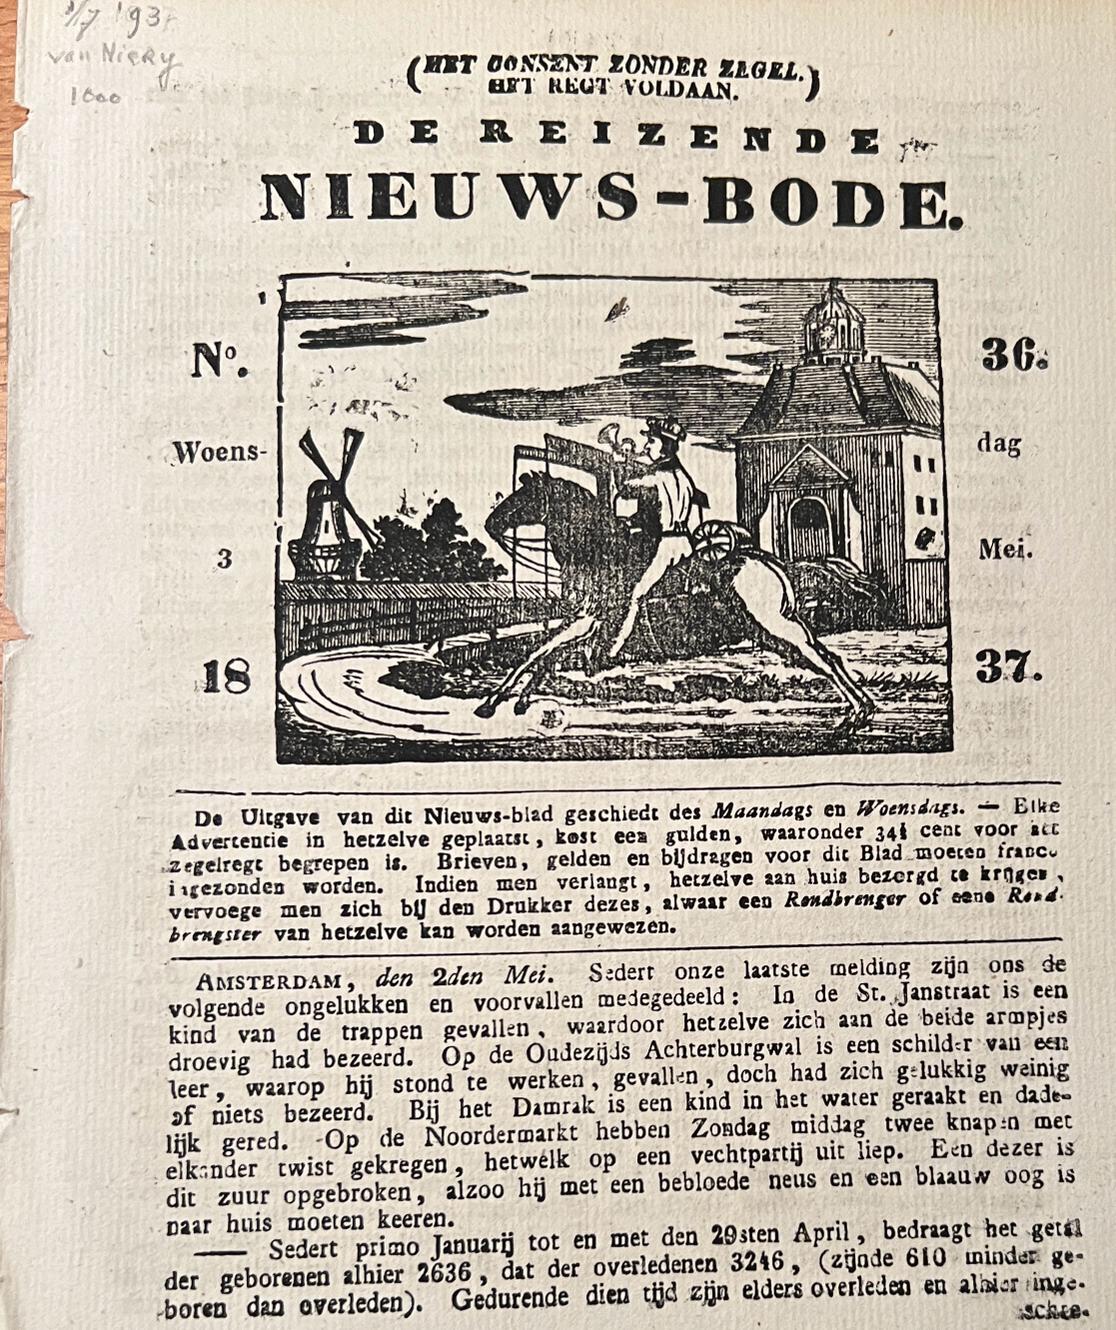 [Pamphlet/Newspaper] - Pamphlet/Newspaper: De reizende Nieuwsbode (nieuws-bode), no 36 Woensdag 3 mei 1837, Amsterdam wed Kok, geb. Van Kolm, 4 pp.